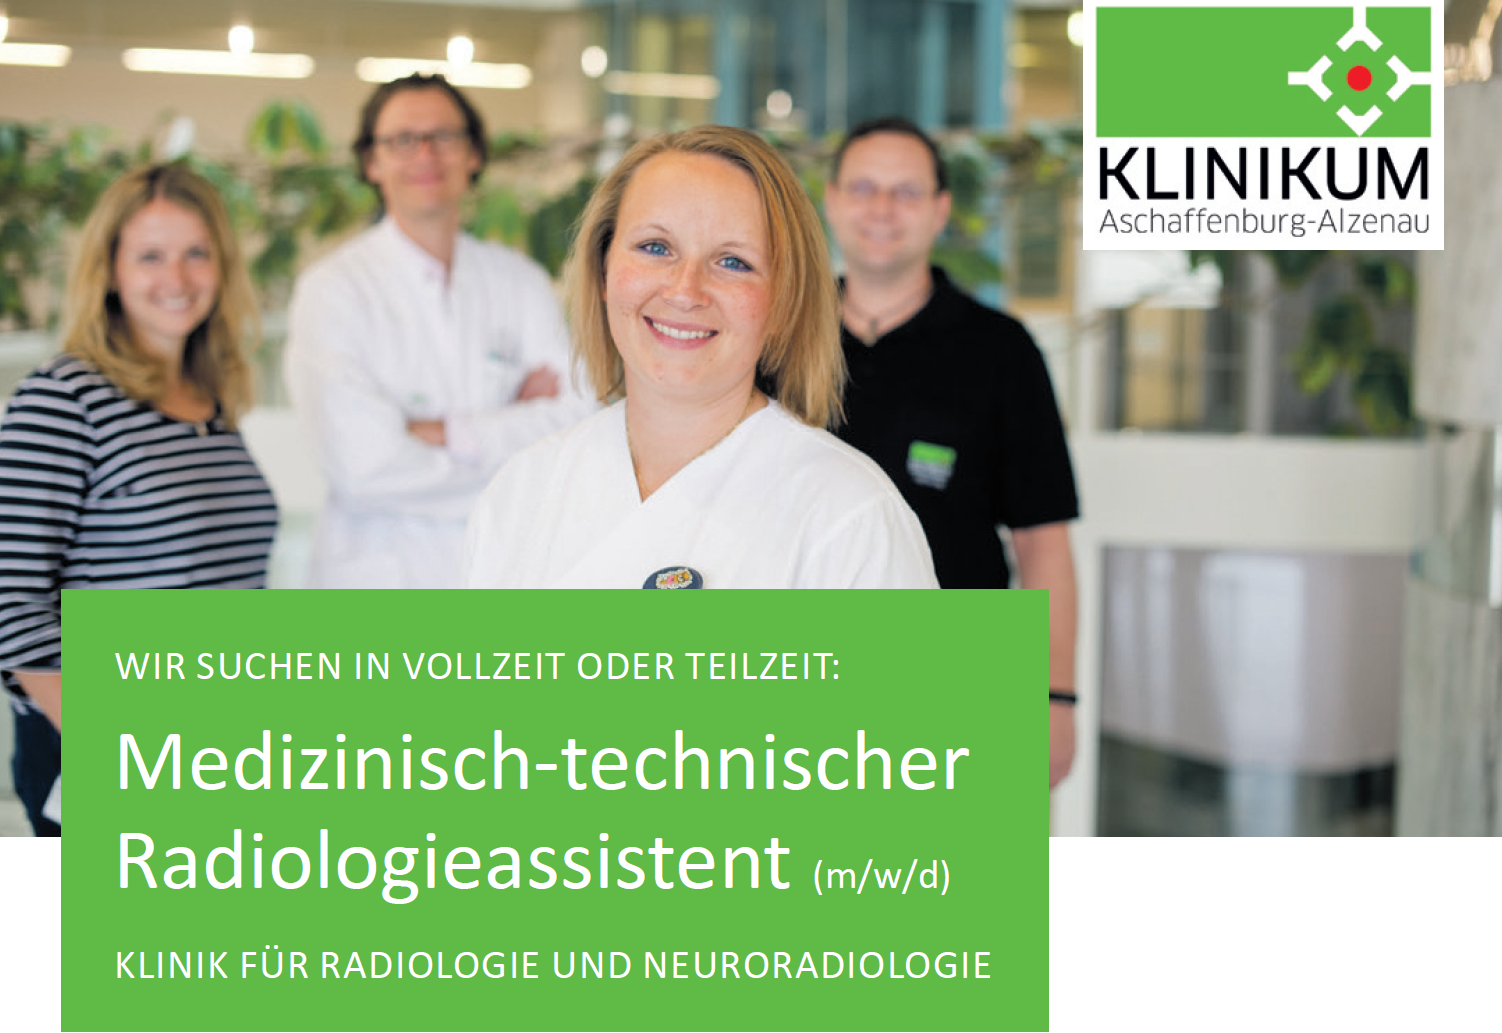 Klinikum Aschaffenburg-Alzenau. WIR SUCHEN IN VOLLZEIT ODER TEILZEIT: Medizinisch-technischer Radiologieassistent  (m/w/d)KLINIK FÜR RADIOLOGIE UND NEURORADIOLOGIE